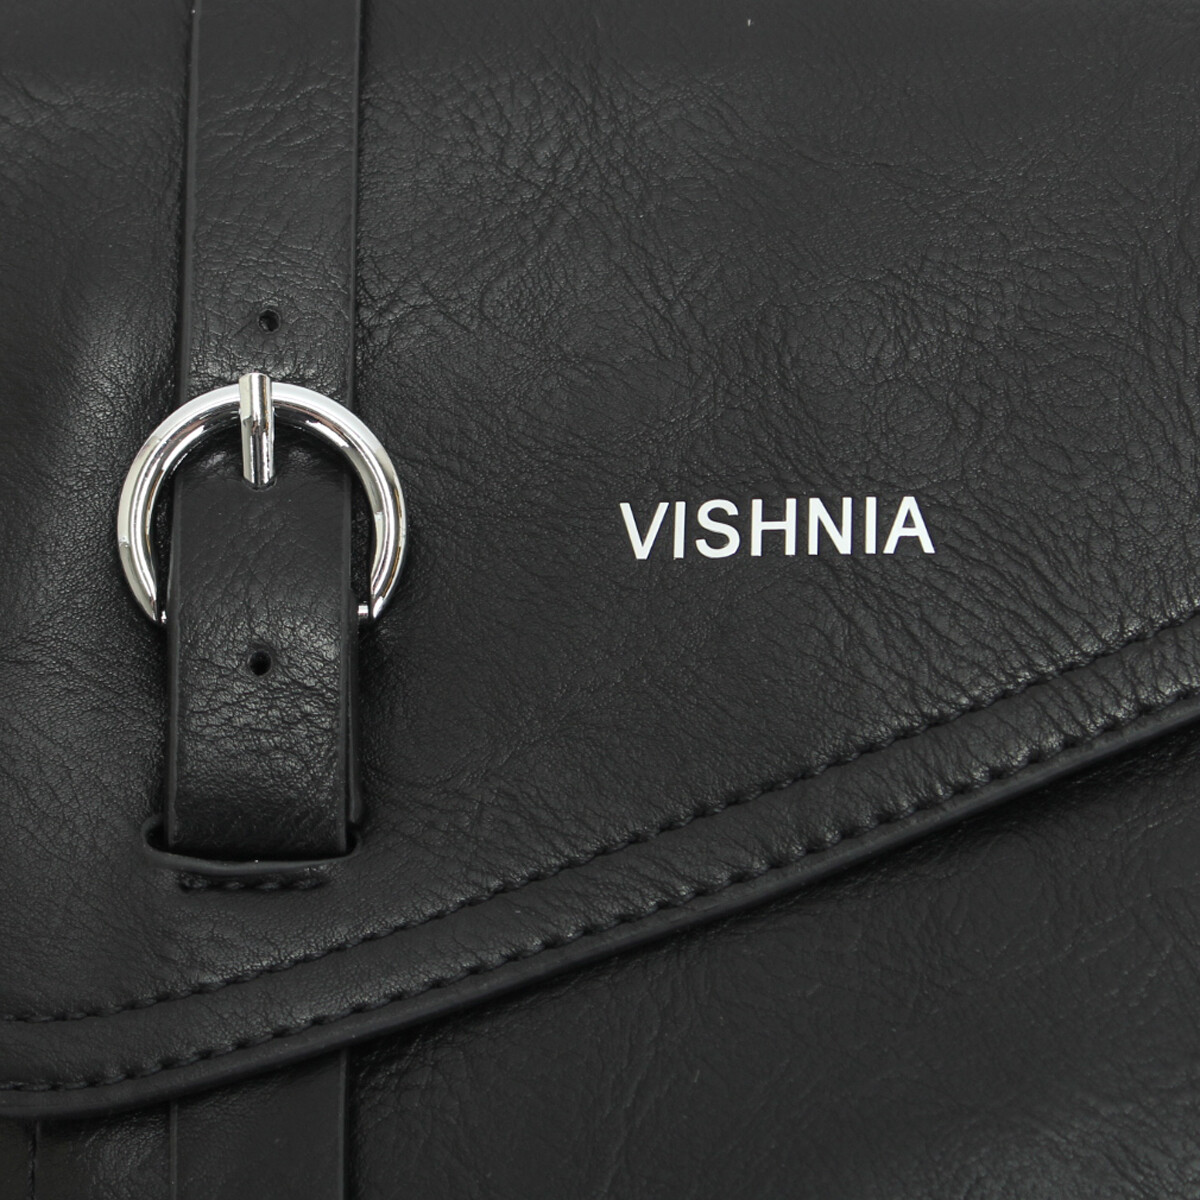 Сумка Vishnia, цвет черный, размер маленький 02181956 седло - фото 4